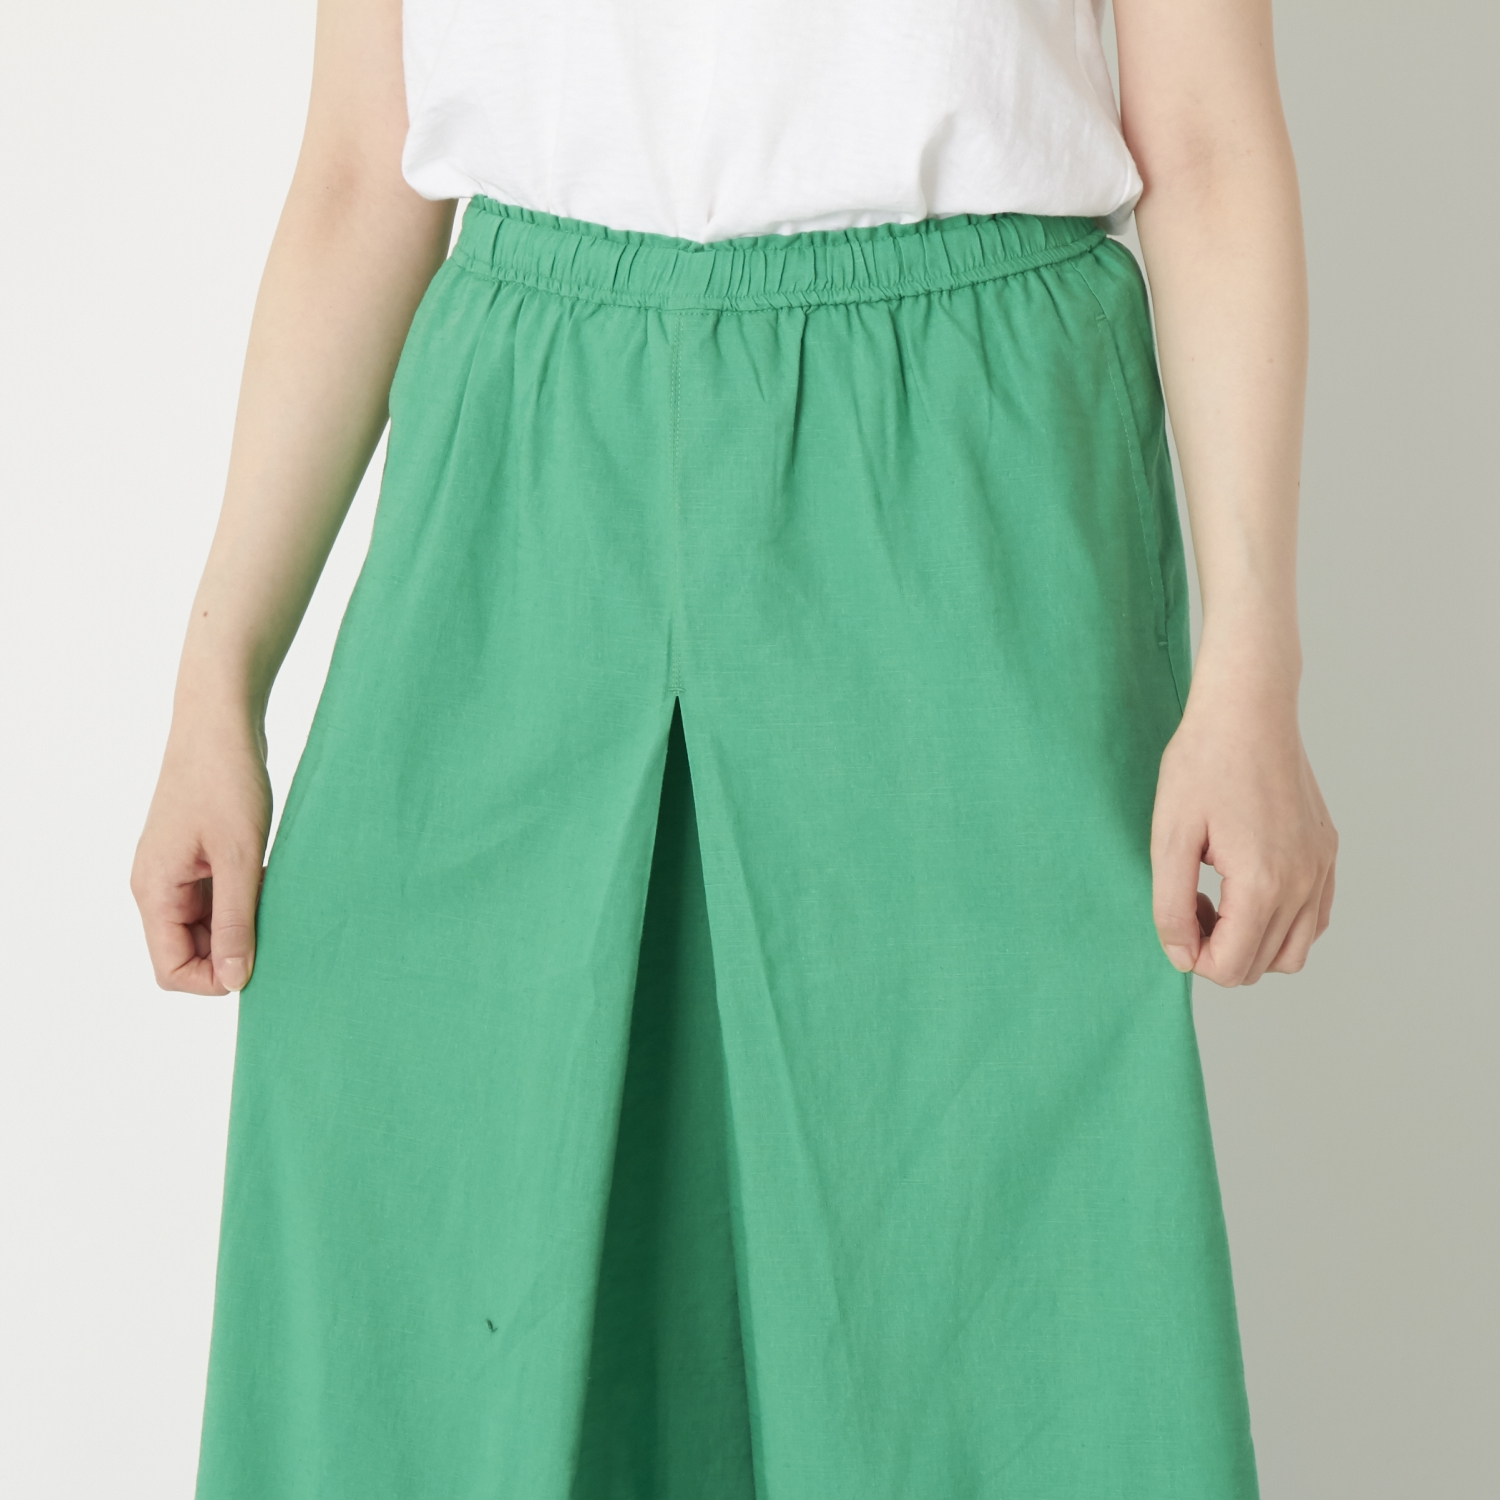 Fanaka/リネンのフレアーパンツ - スカートとパンツのいいとこどり！楽に穿けるワイドパンツ